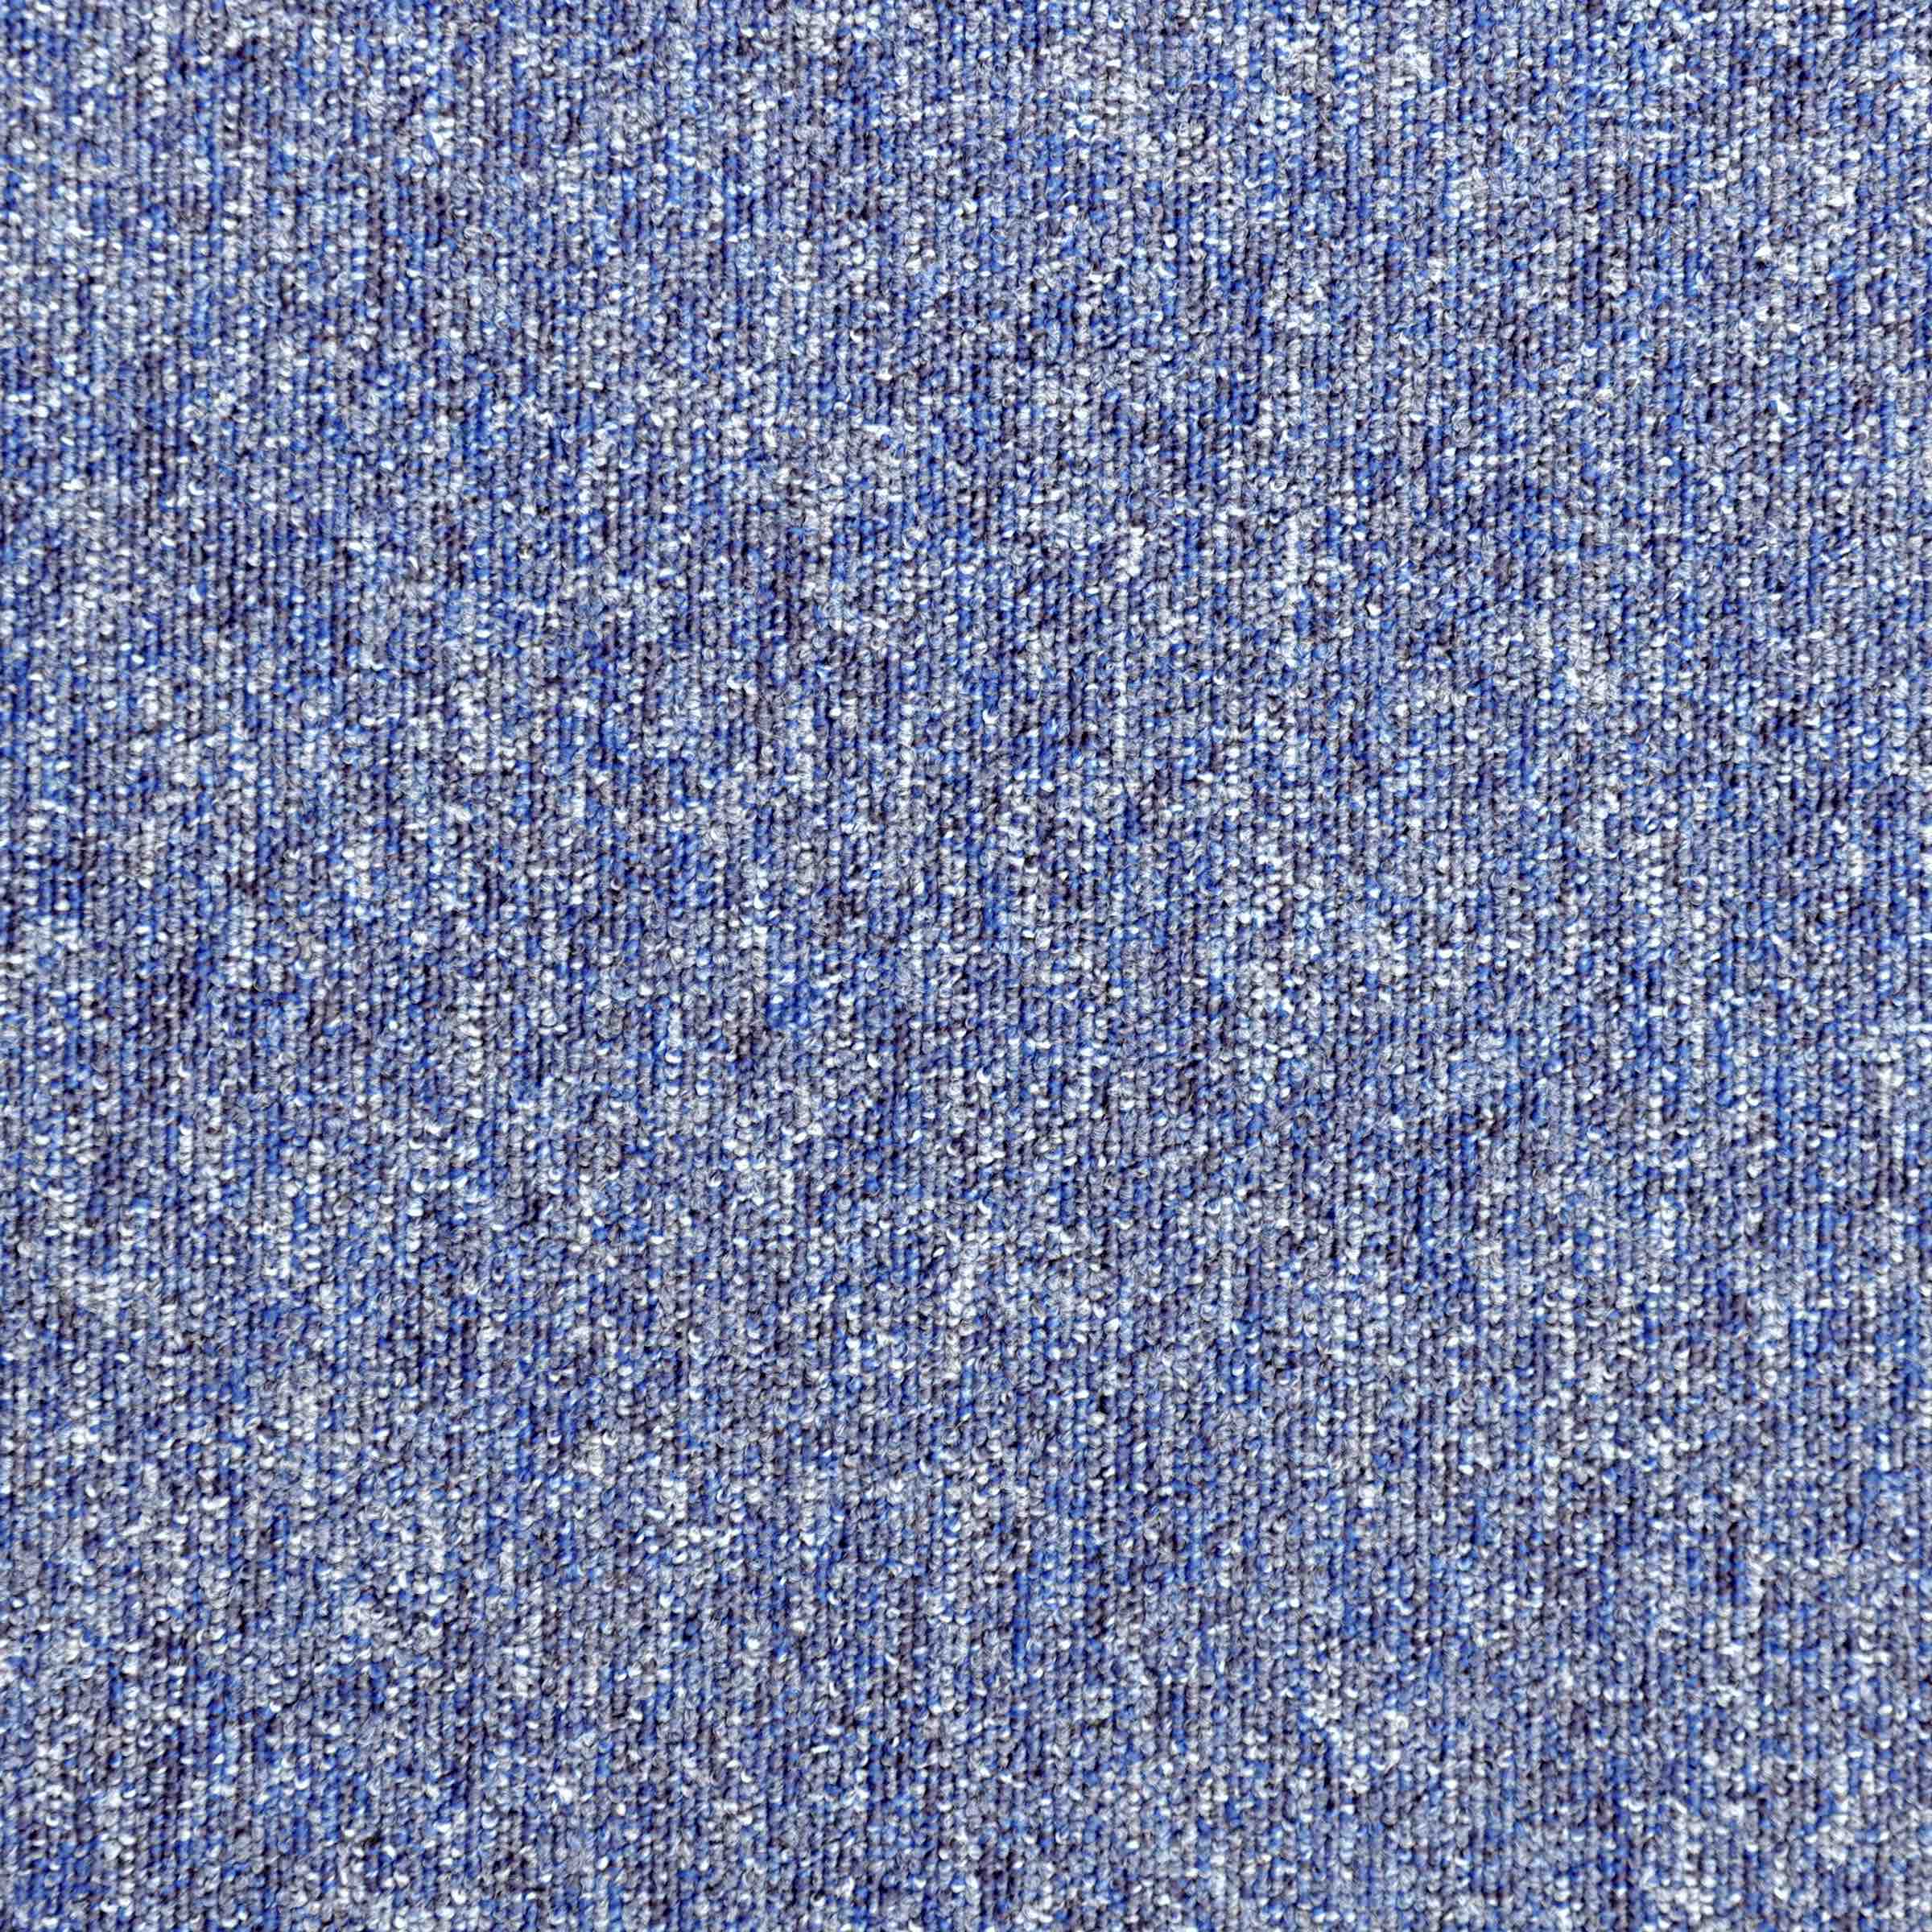 Vital | 6310 | Paragon Carpet Tiles | Commercial Carpet Tiles